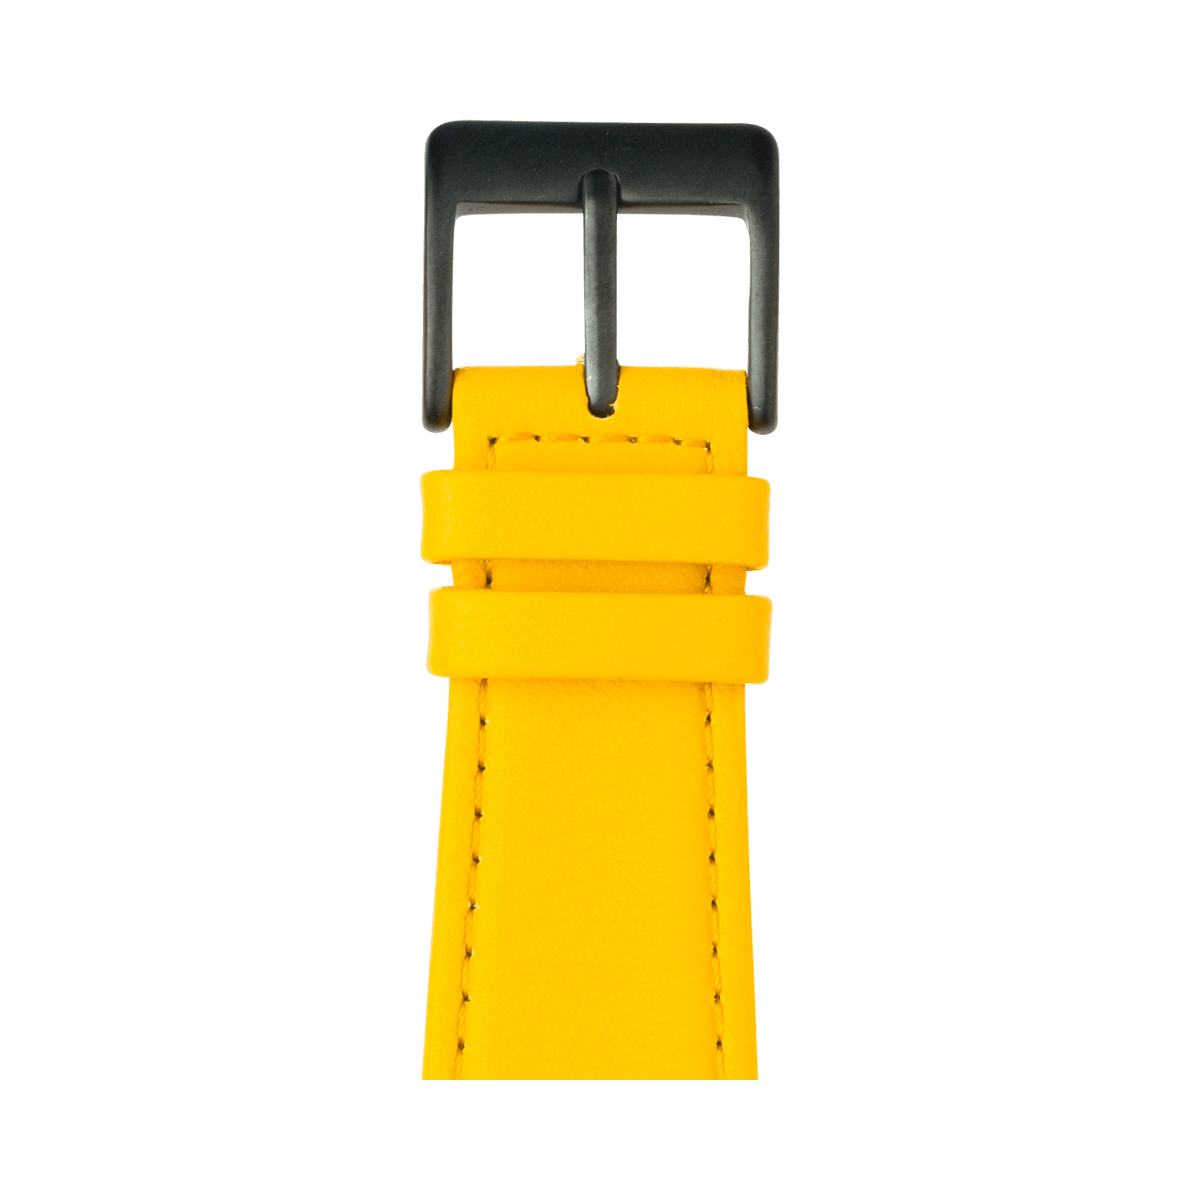 Nappa Leder Armband in Gelb - bracebuds